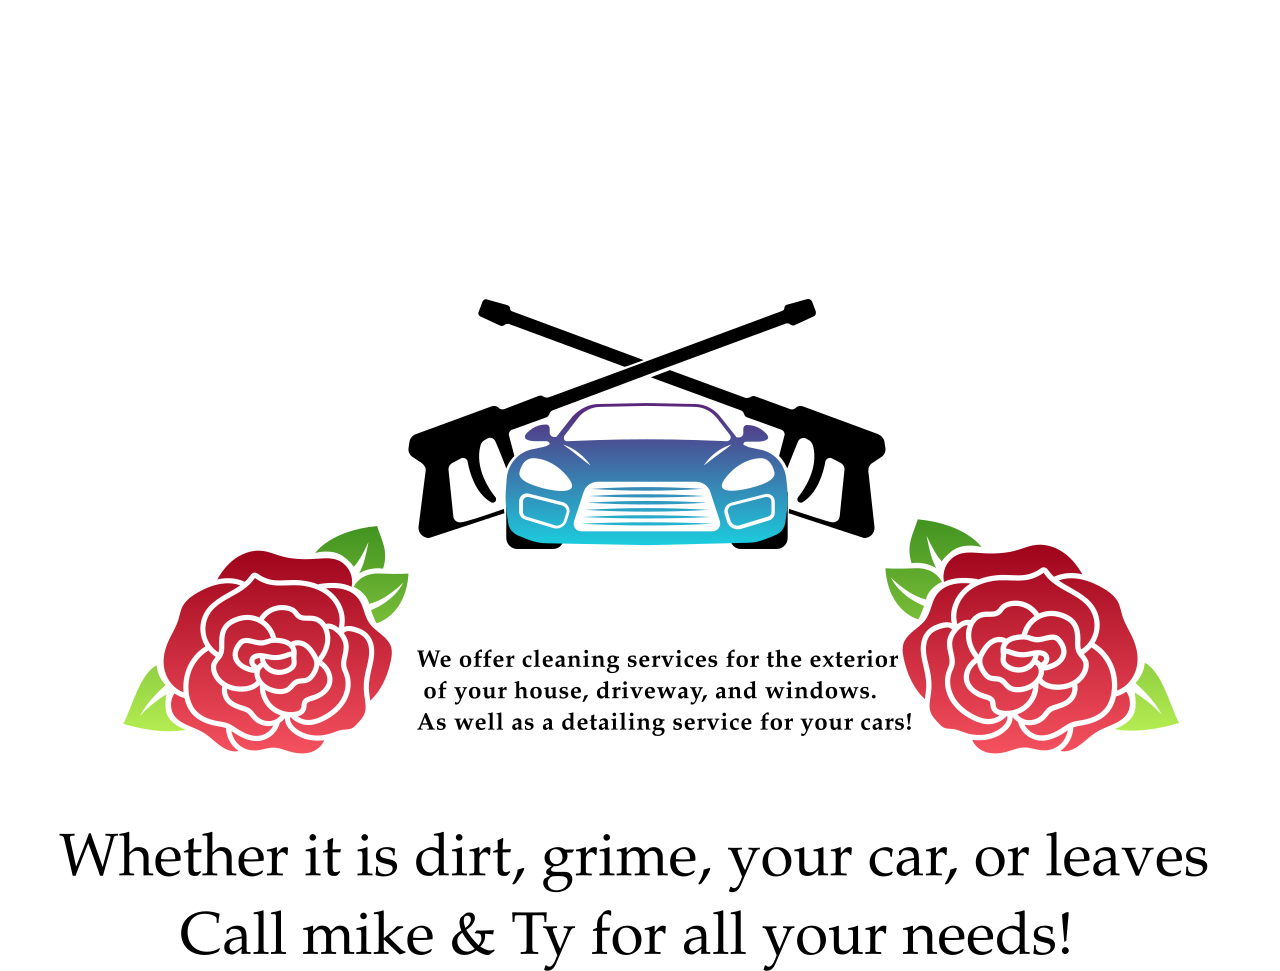 Mobile Sudz & lawn care's logo